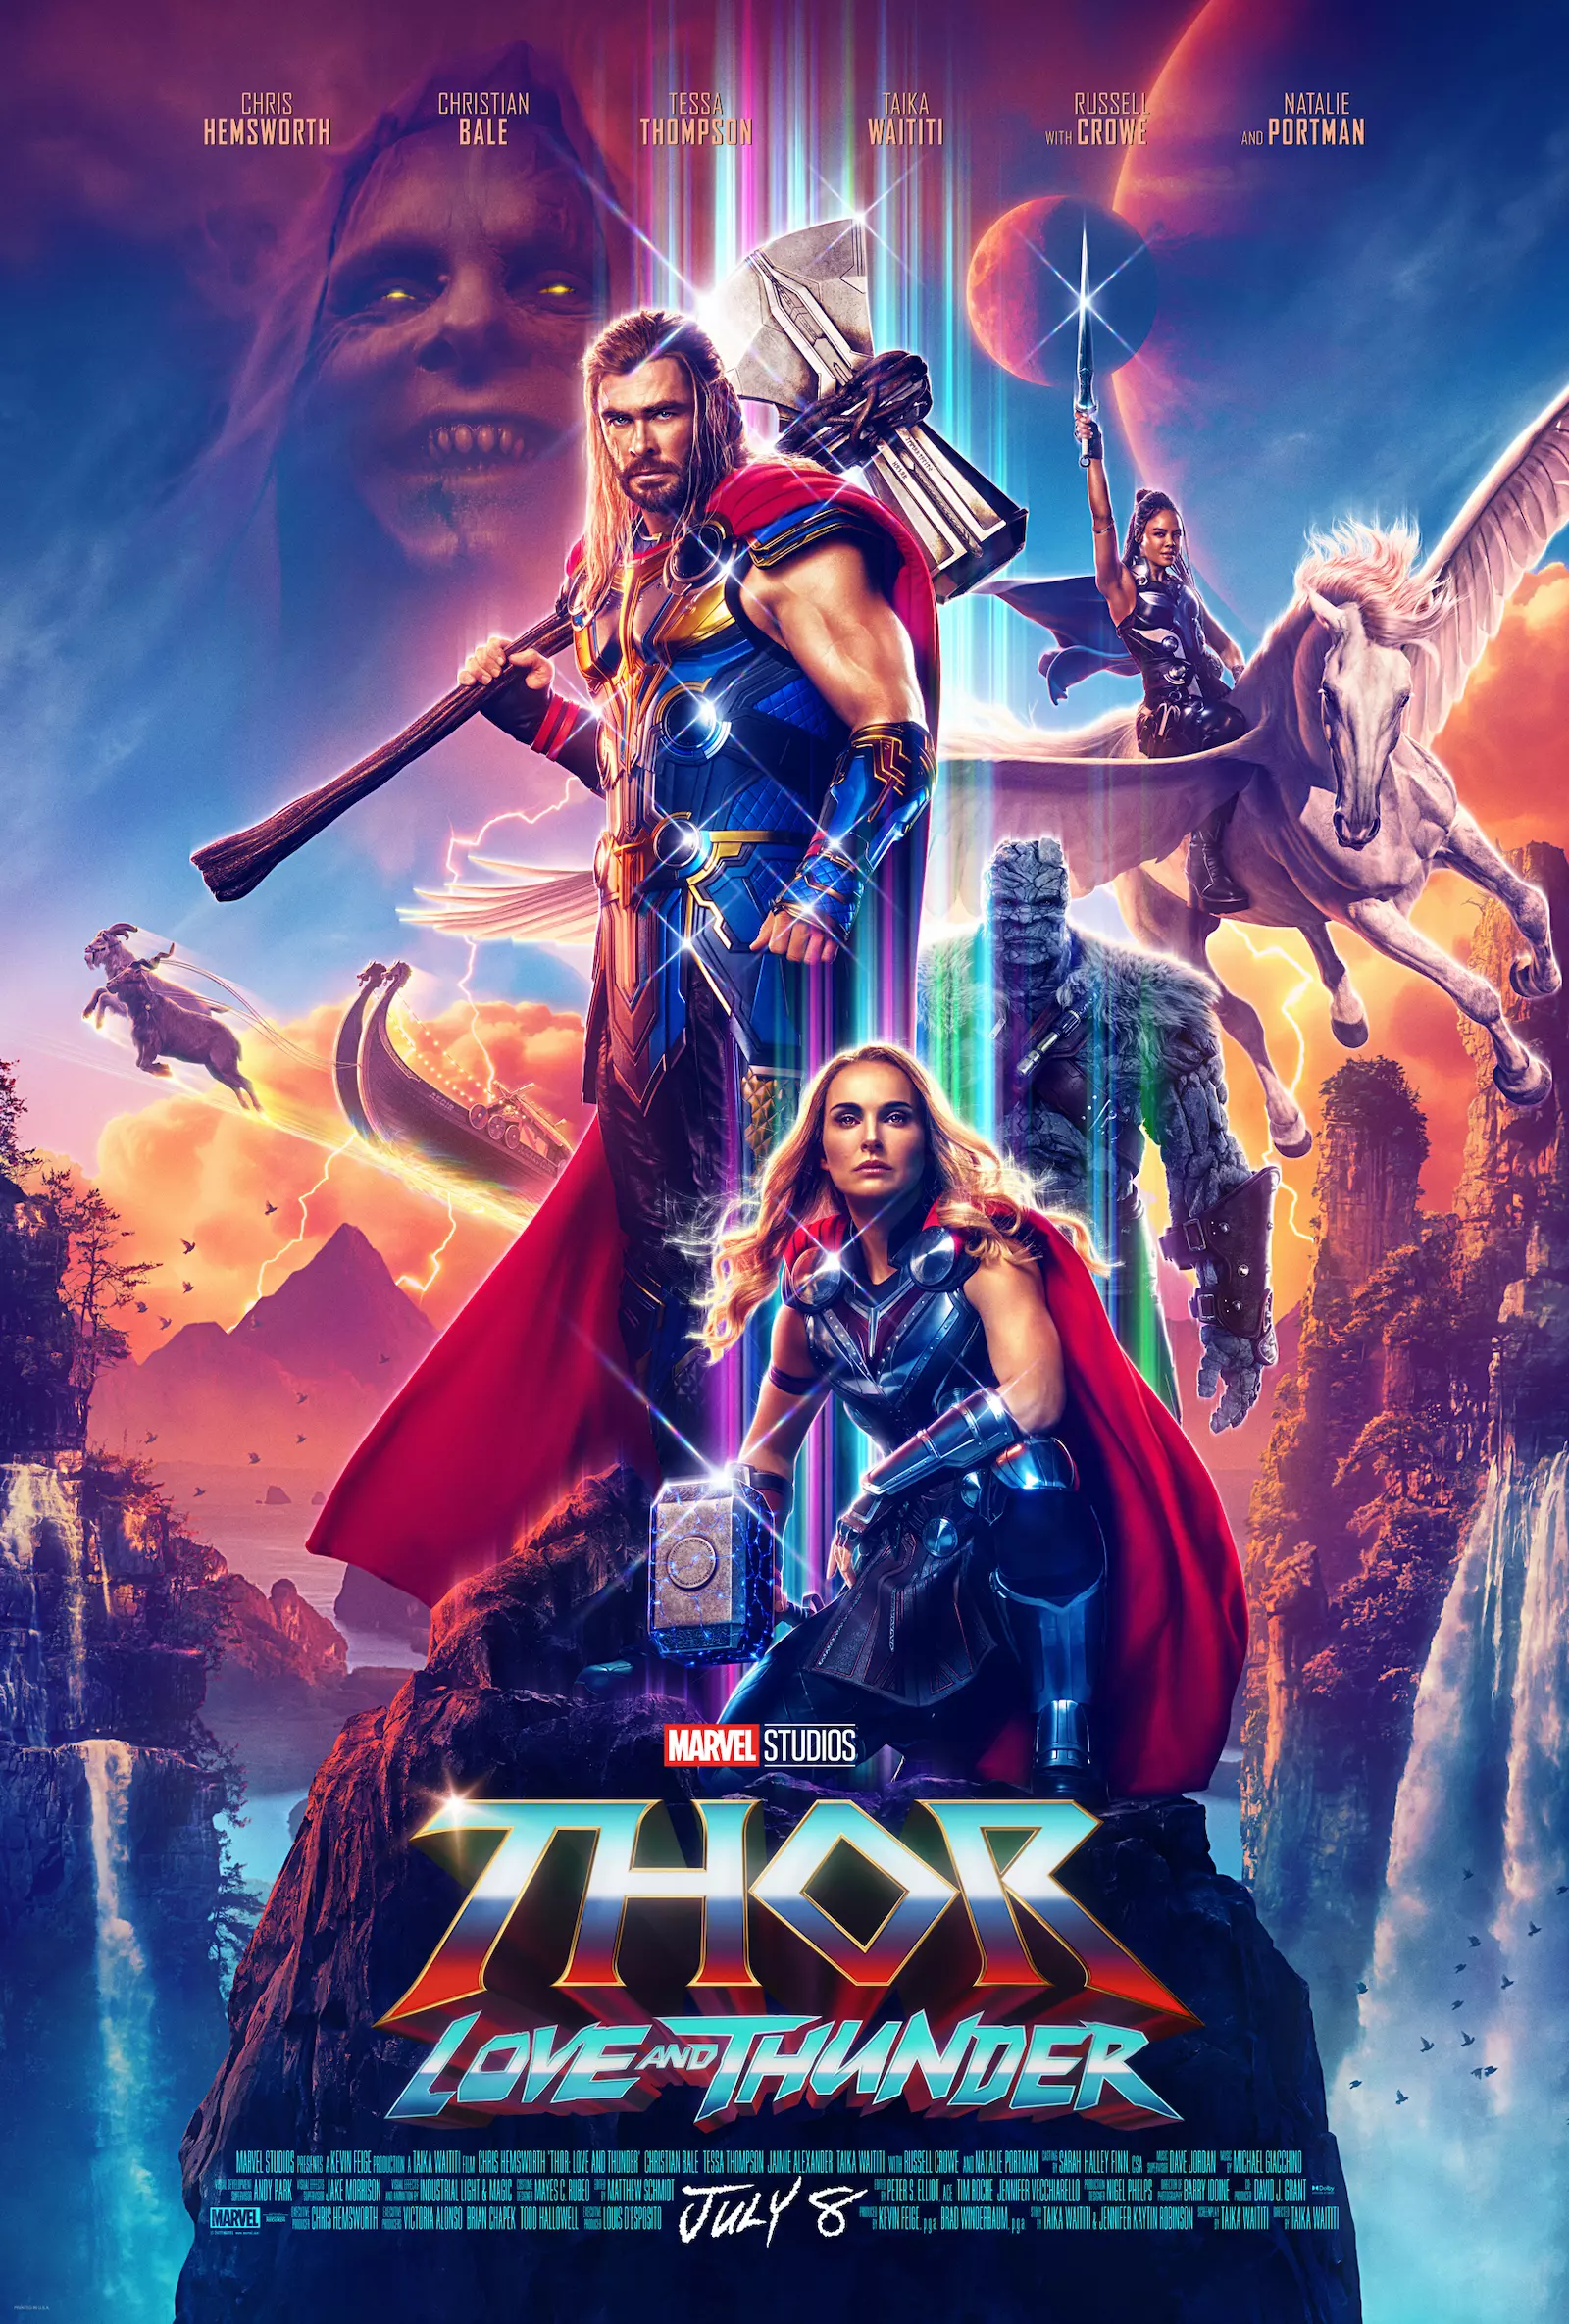 God of War: Ragnarok trailer reveals a menacing Thor as the key